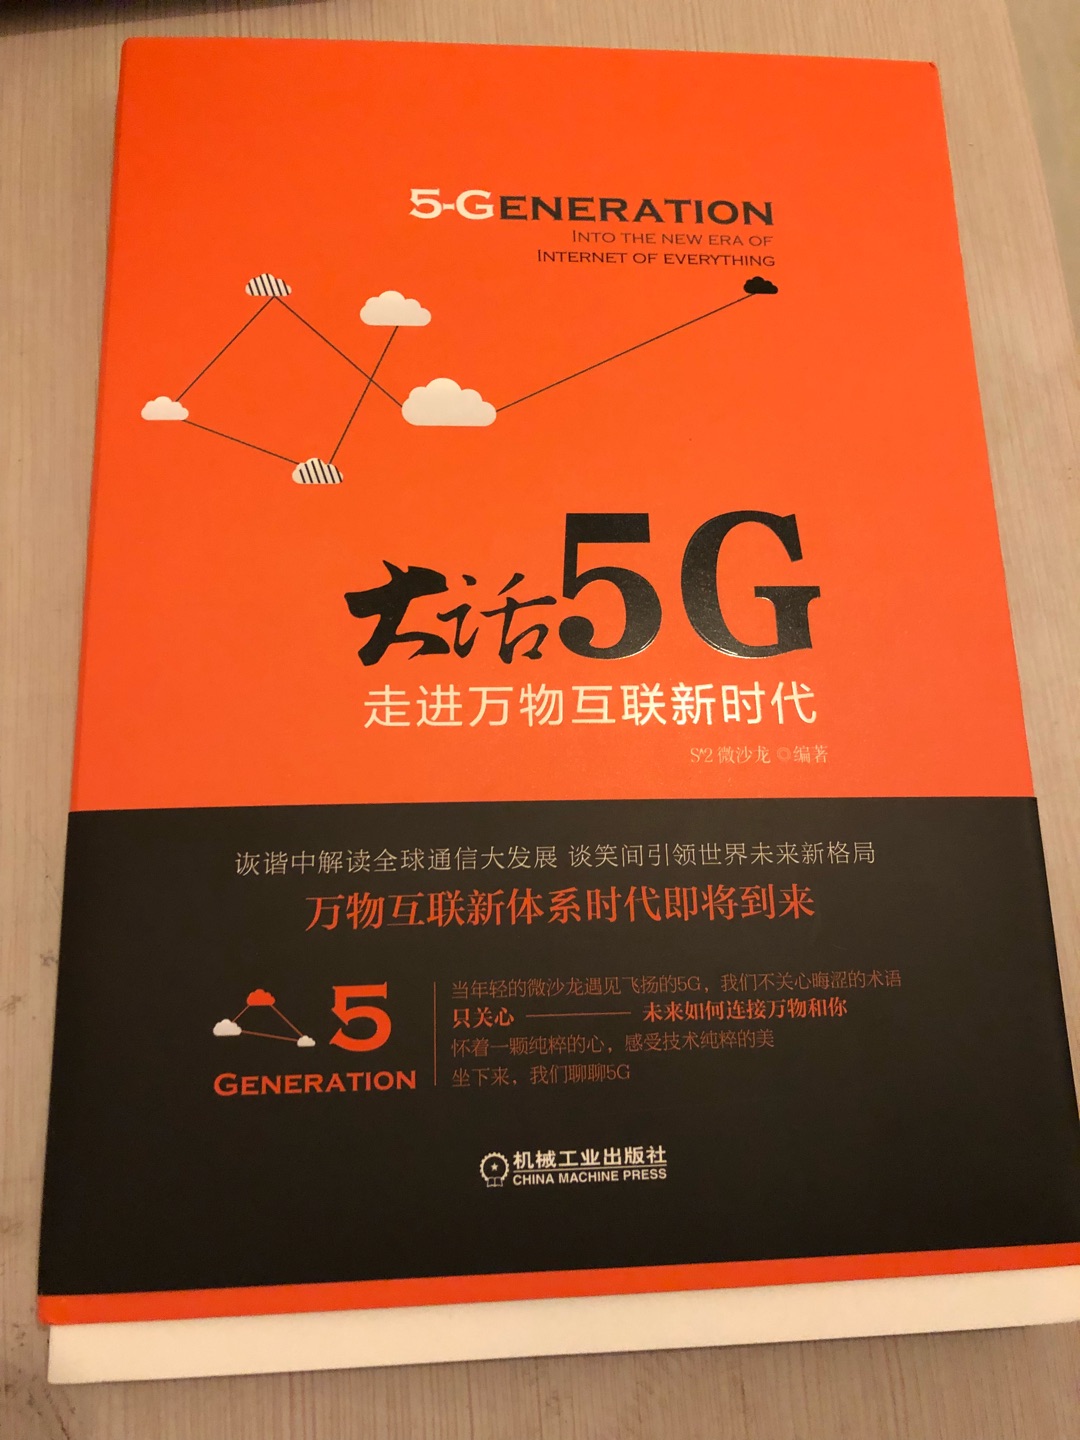 书浅显易懂，能够让人了解5G基础，对于想了解5G波形调制编码原理的人来说还是浅显和不足